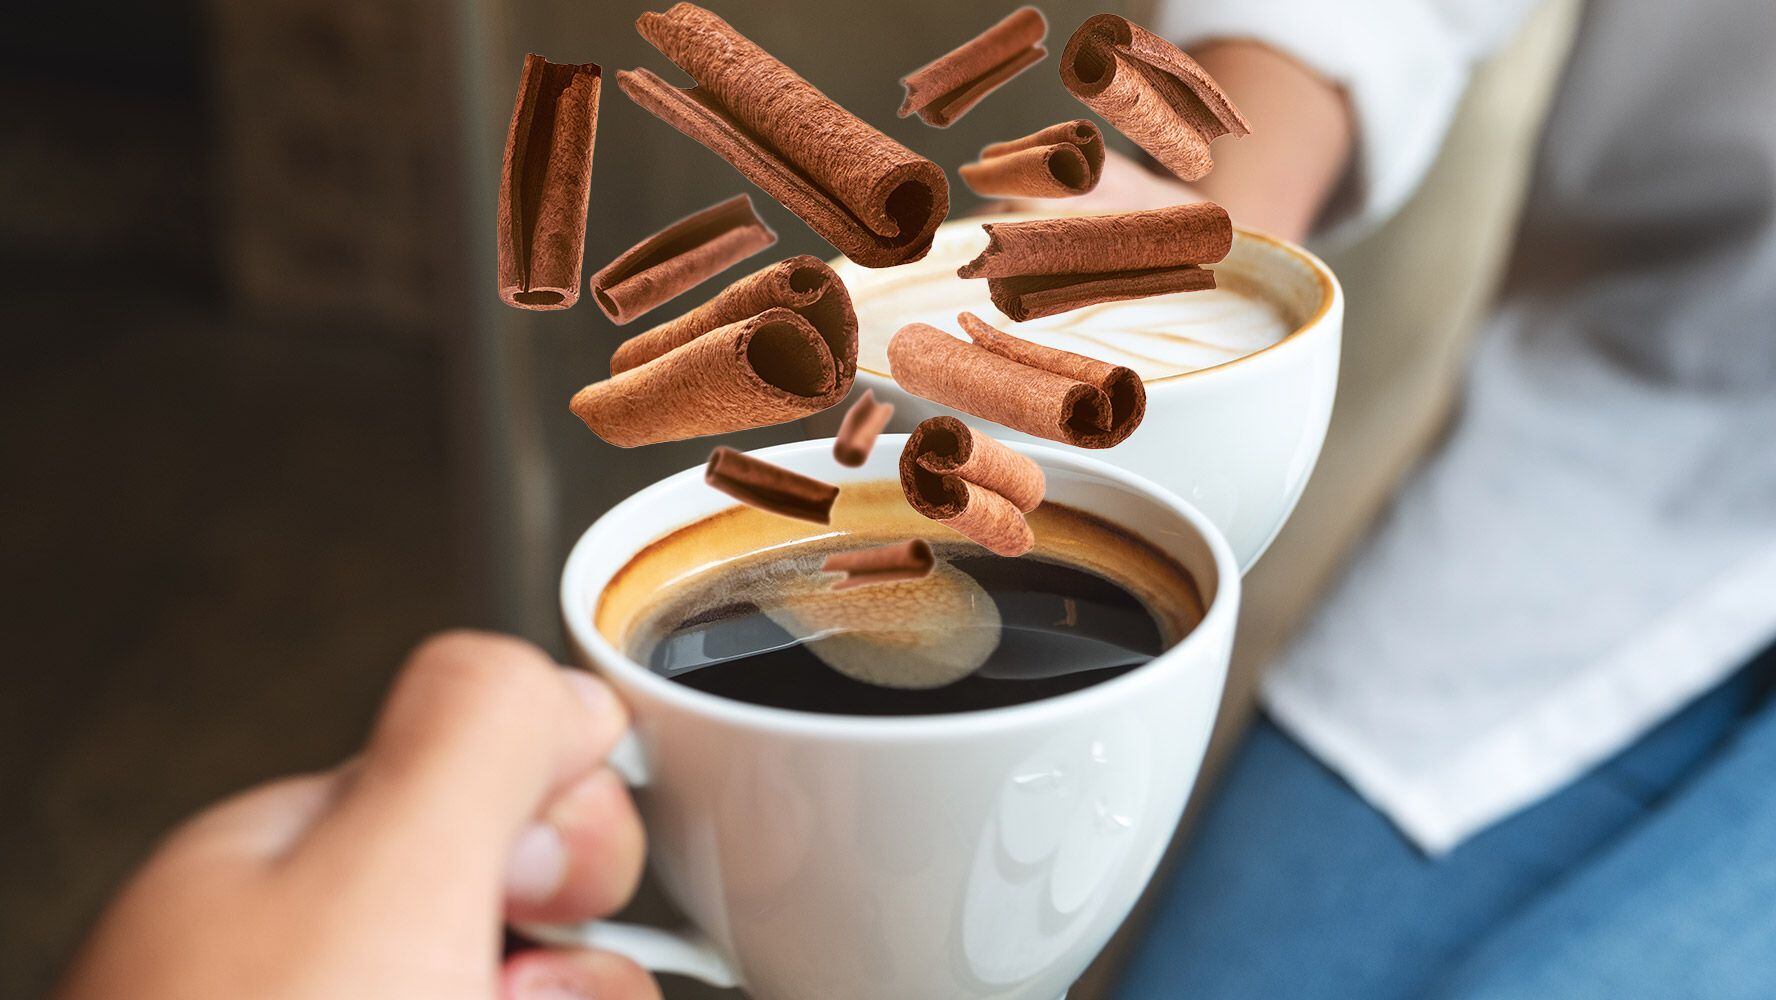 La canela es una de las formas que hacen al café más saludable. (Foto: Especial).